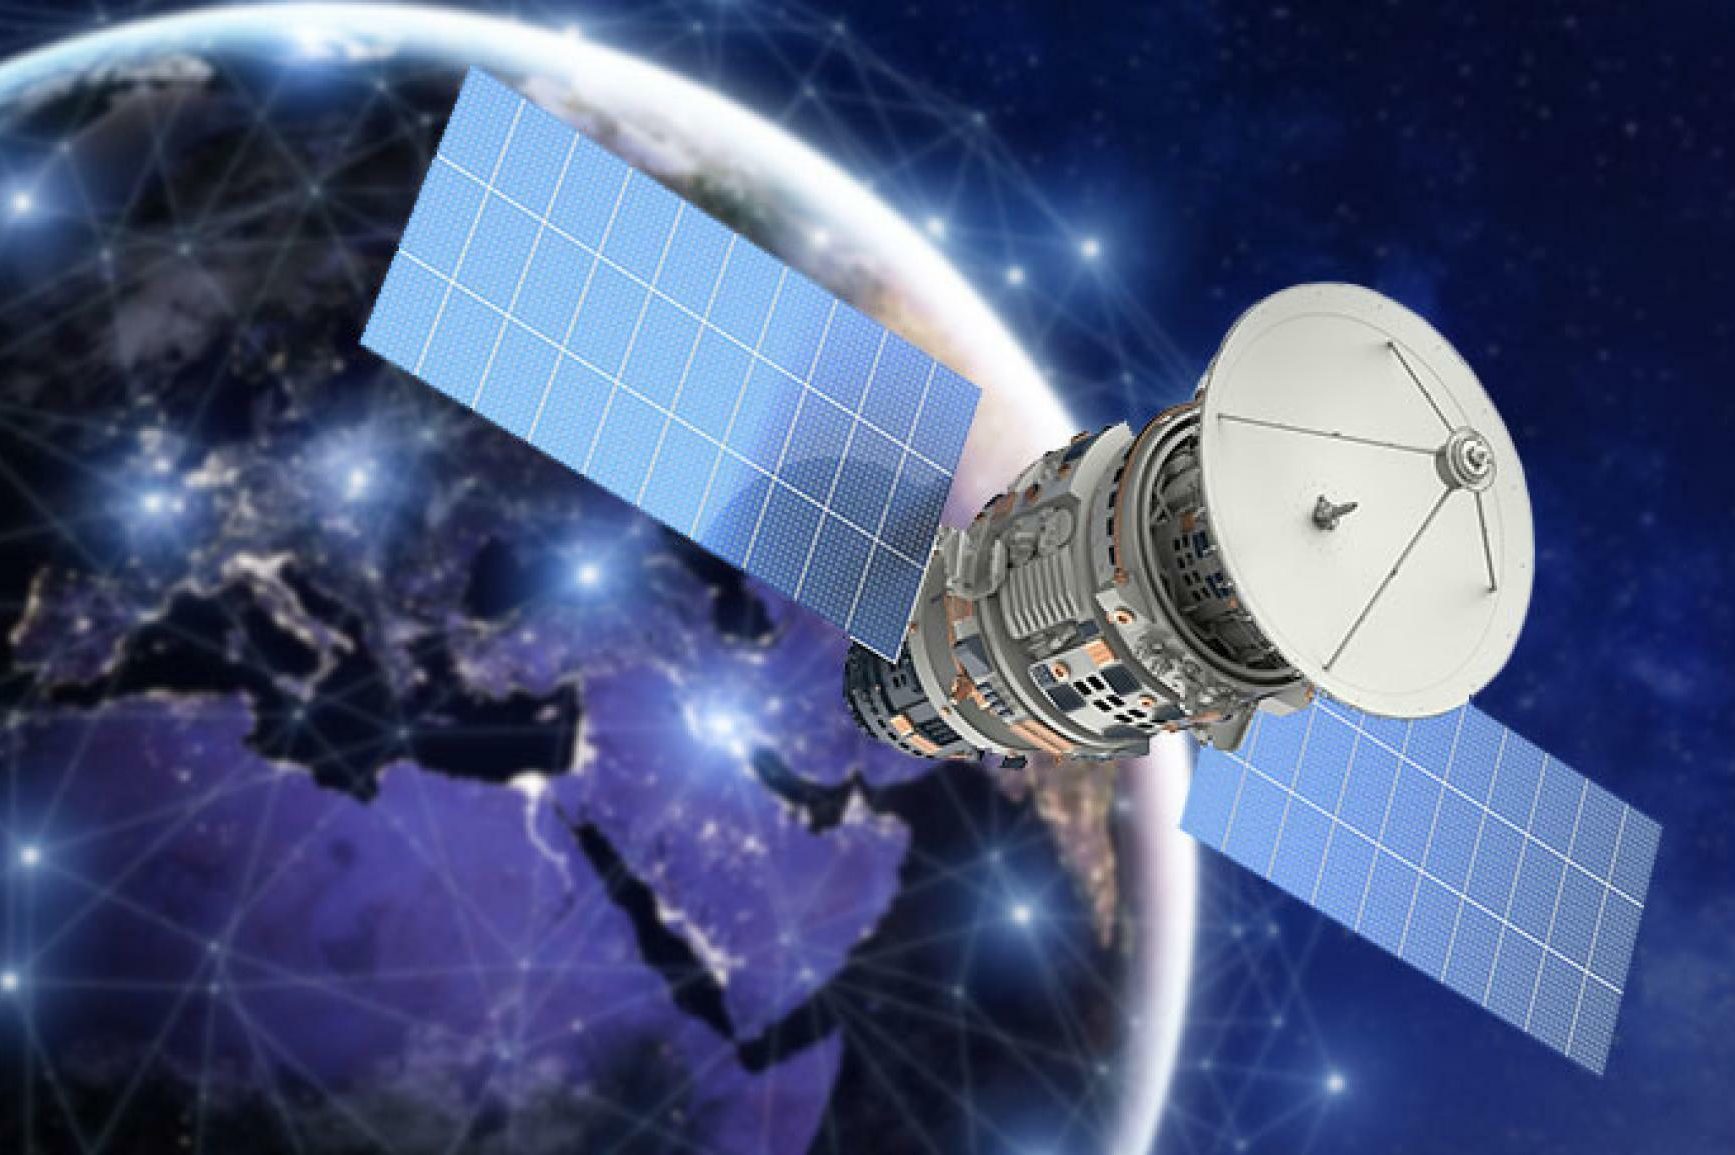 یکی از زیر ساخت های اینترنت ماهواره ای پرتاب ماهواره به مدار زمین است که توسط ارائه کنندگان اینترنت صورت می گیرد.